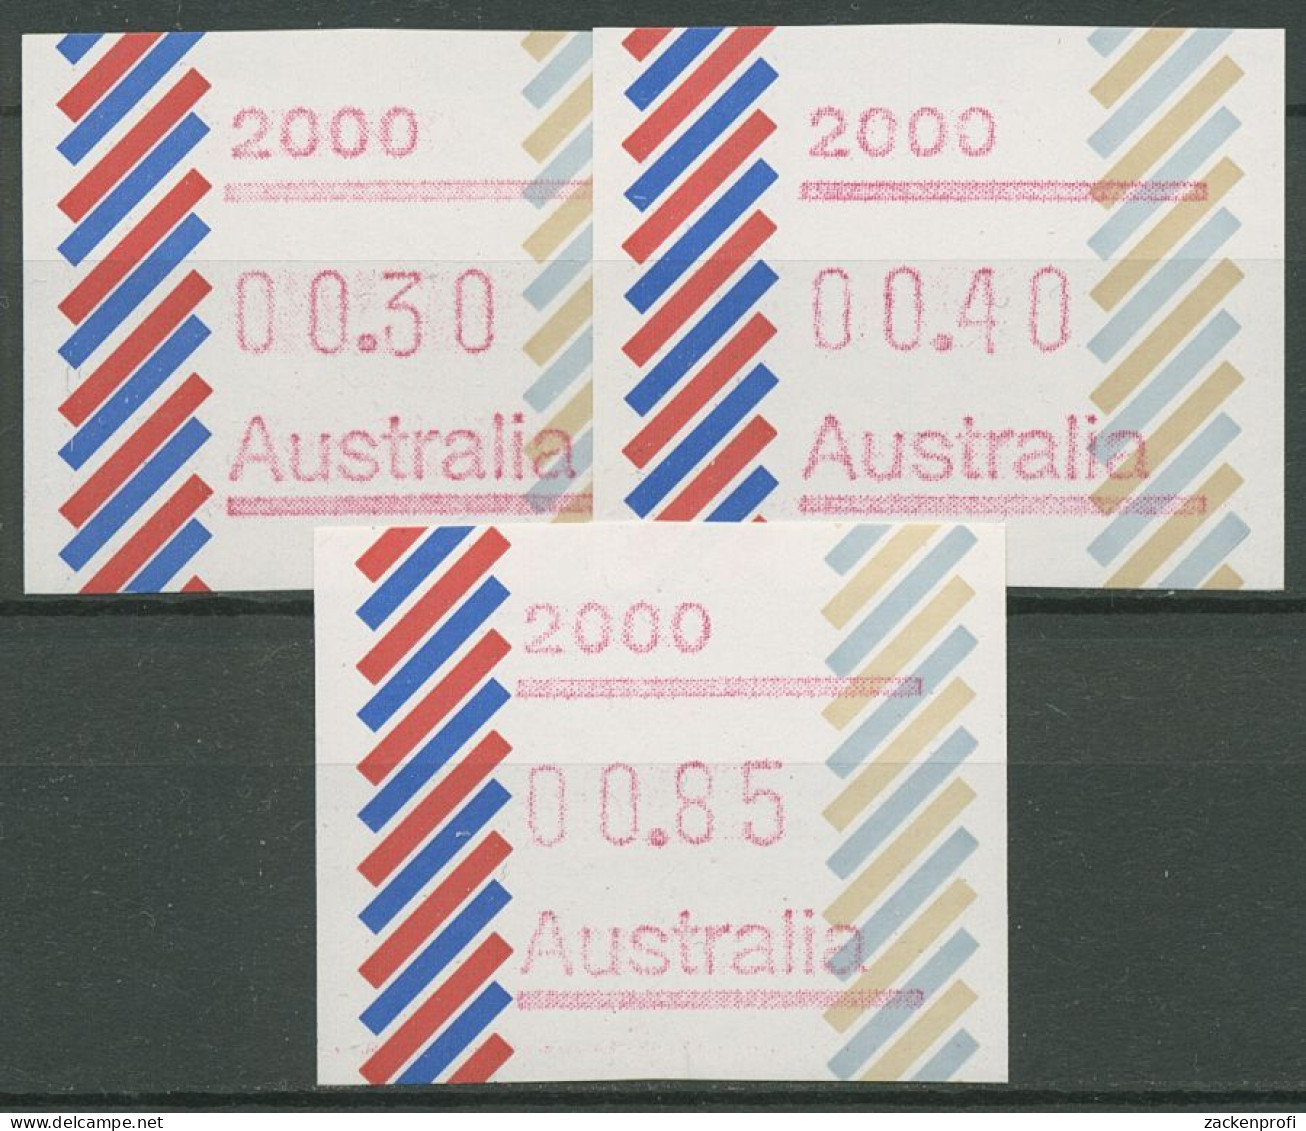 Australien 1984 Balken Tastensatz Automatenmarke 1 S1, 2000 Postfrisch - Machine Labels [ATM]